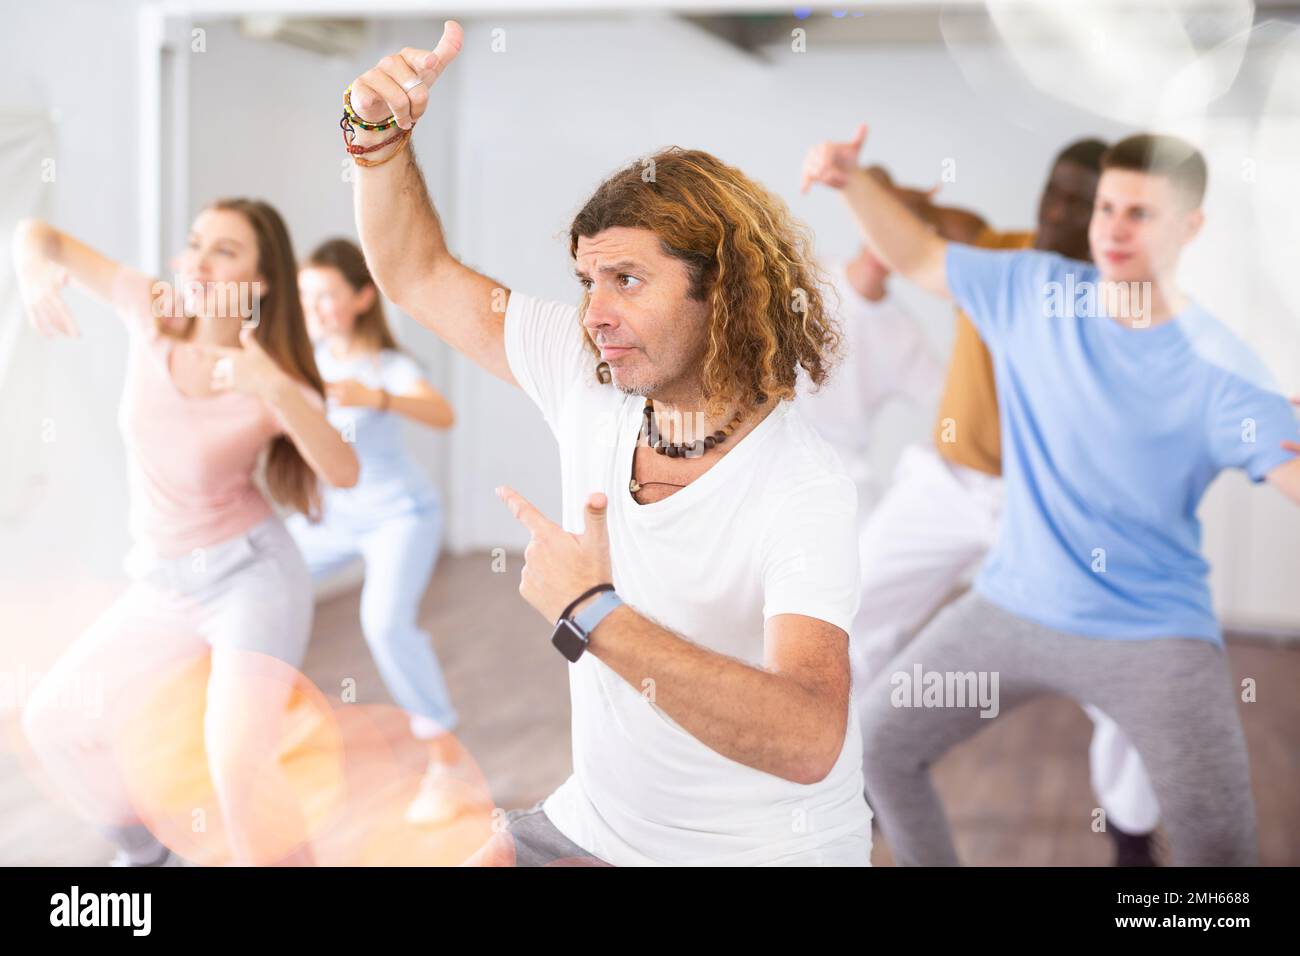 Les femmes et les hommes font de la danse pendant les cours de groupe au centre de conditionnement physique Banque D'Images